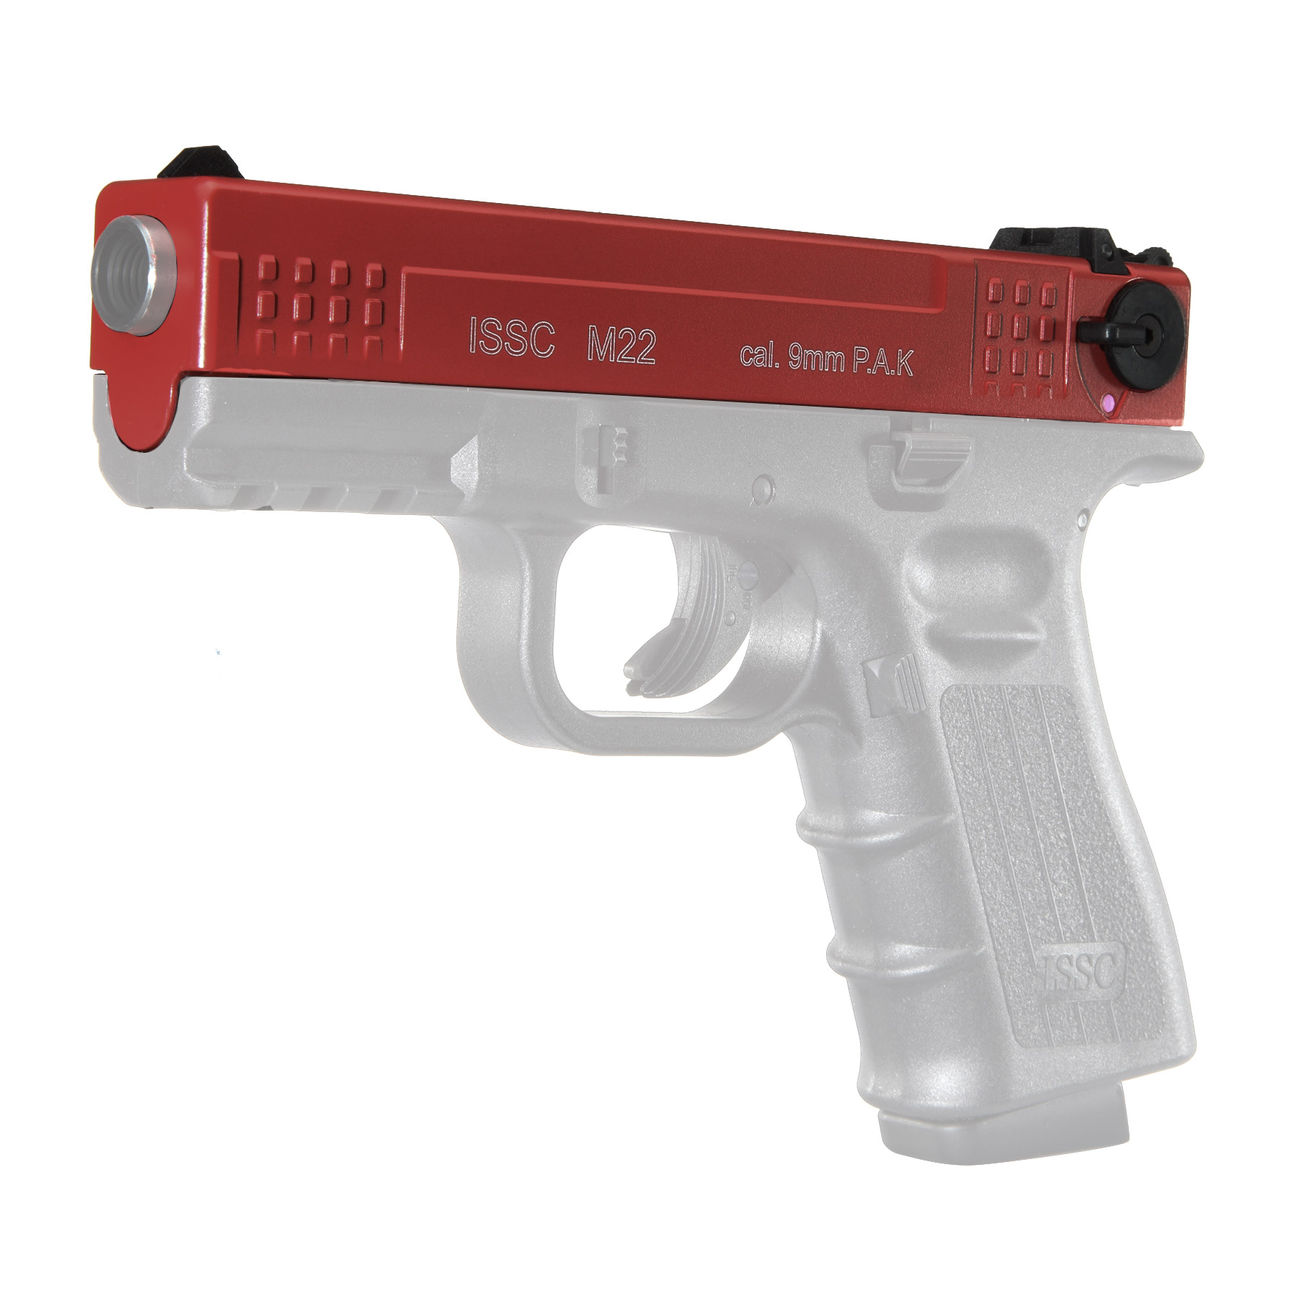 Wechselschlitten für ISSC M22 Schreckschuss Pistole Kal. 9mm P.A.K. Rot